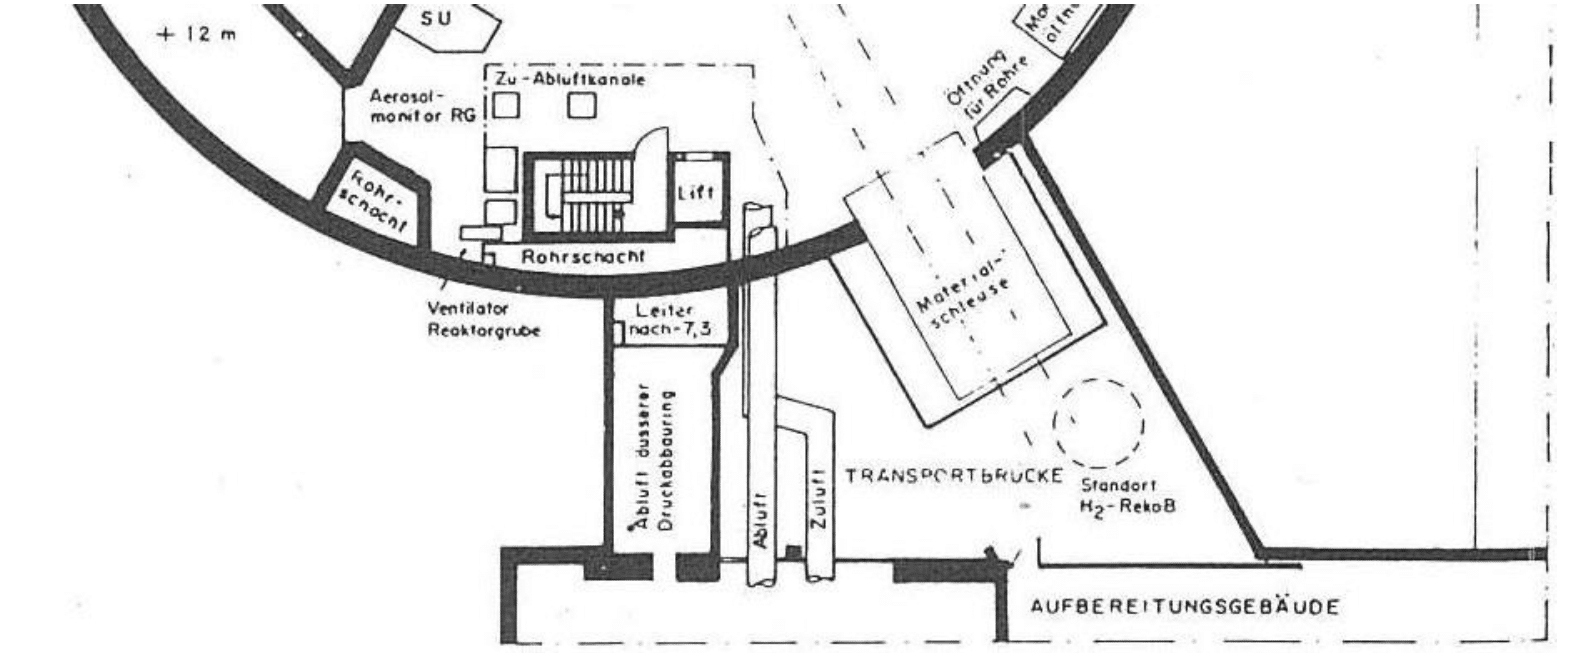 Figure 5 Reaktorgebäude Grundriss +8m, Fig: 12.1.3.b, KKM Sicherheitsbericht 1989